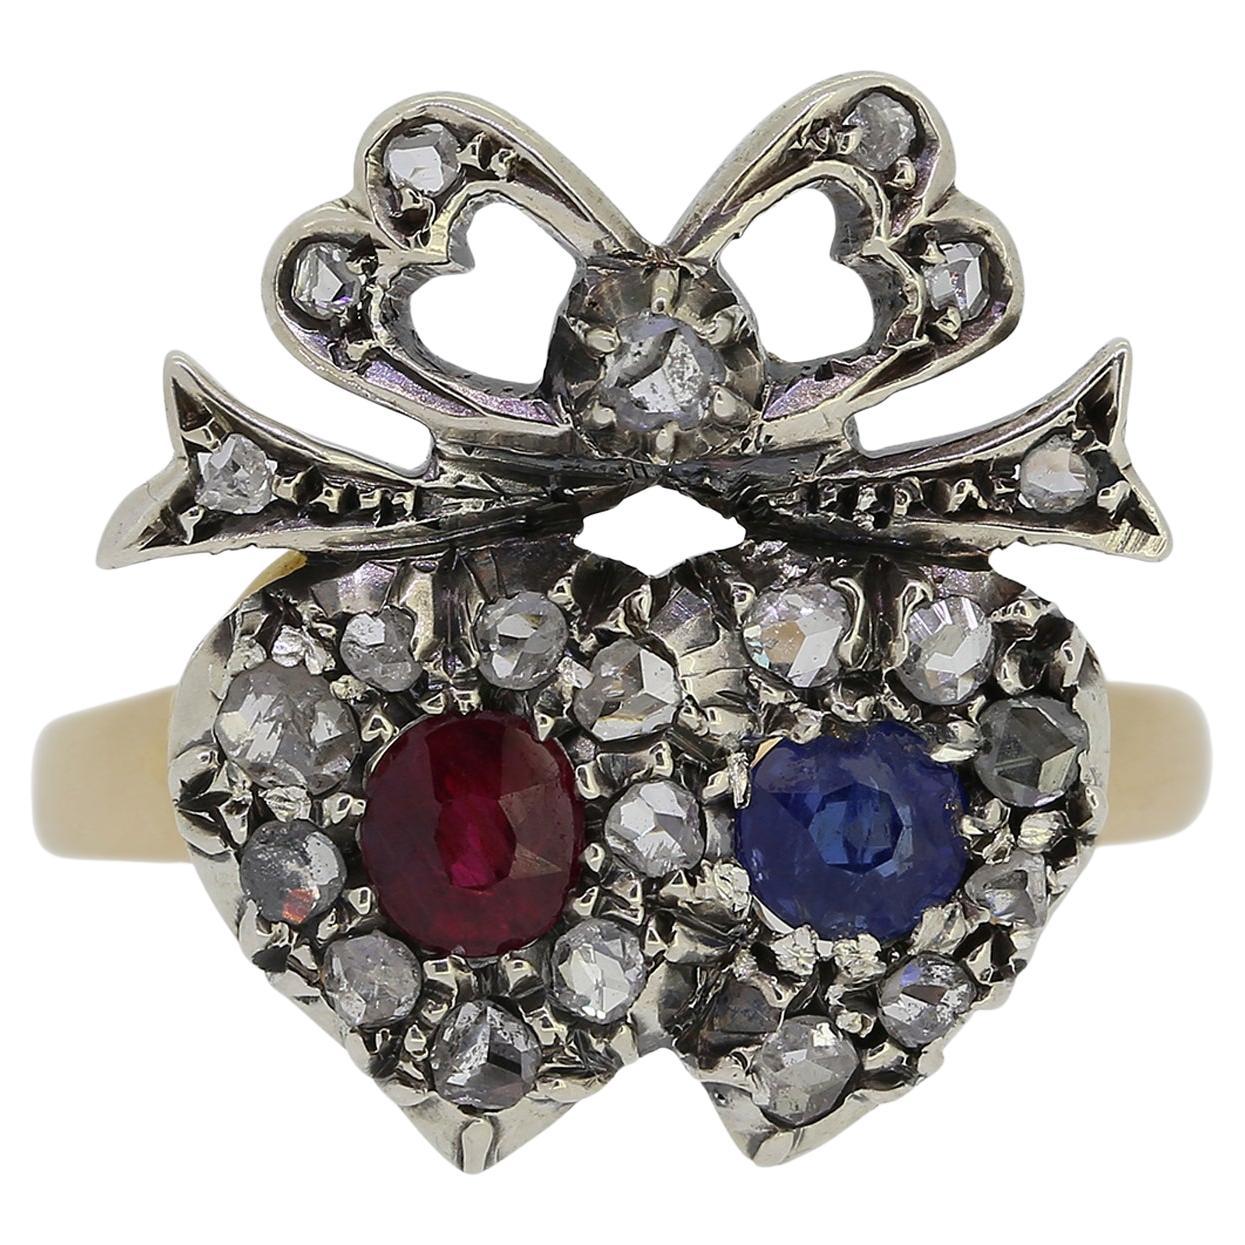 Viktorianischer Kronenring aus viktorianischem Doppelherz, Rubin, Saphir und Diamant